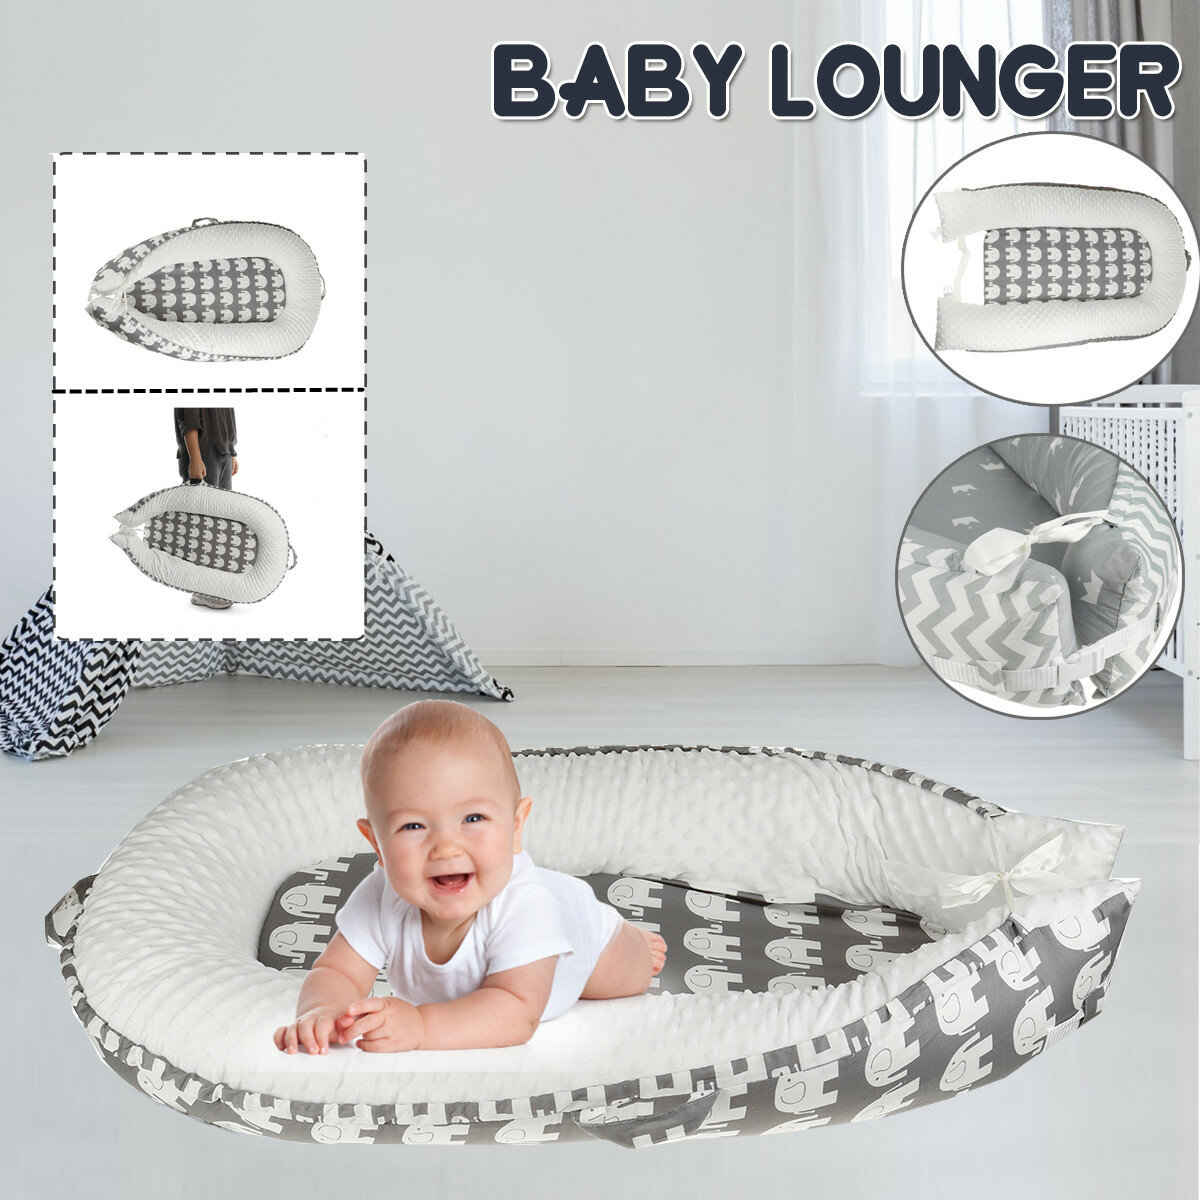 Infant Soft Newborn Baby Pillow Cushion Lounger Pod Cot Bed Sleeping Mattre